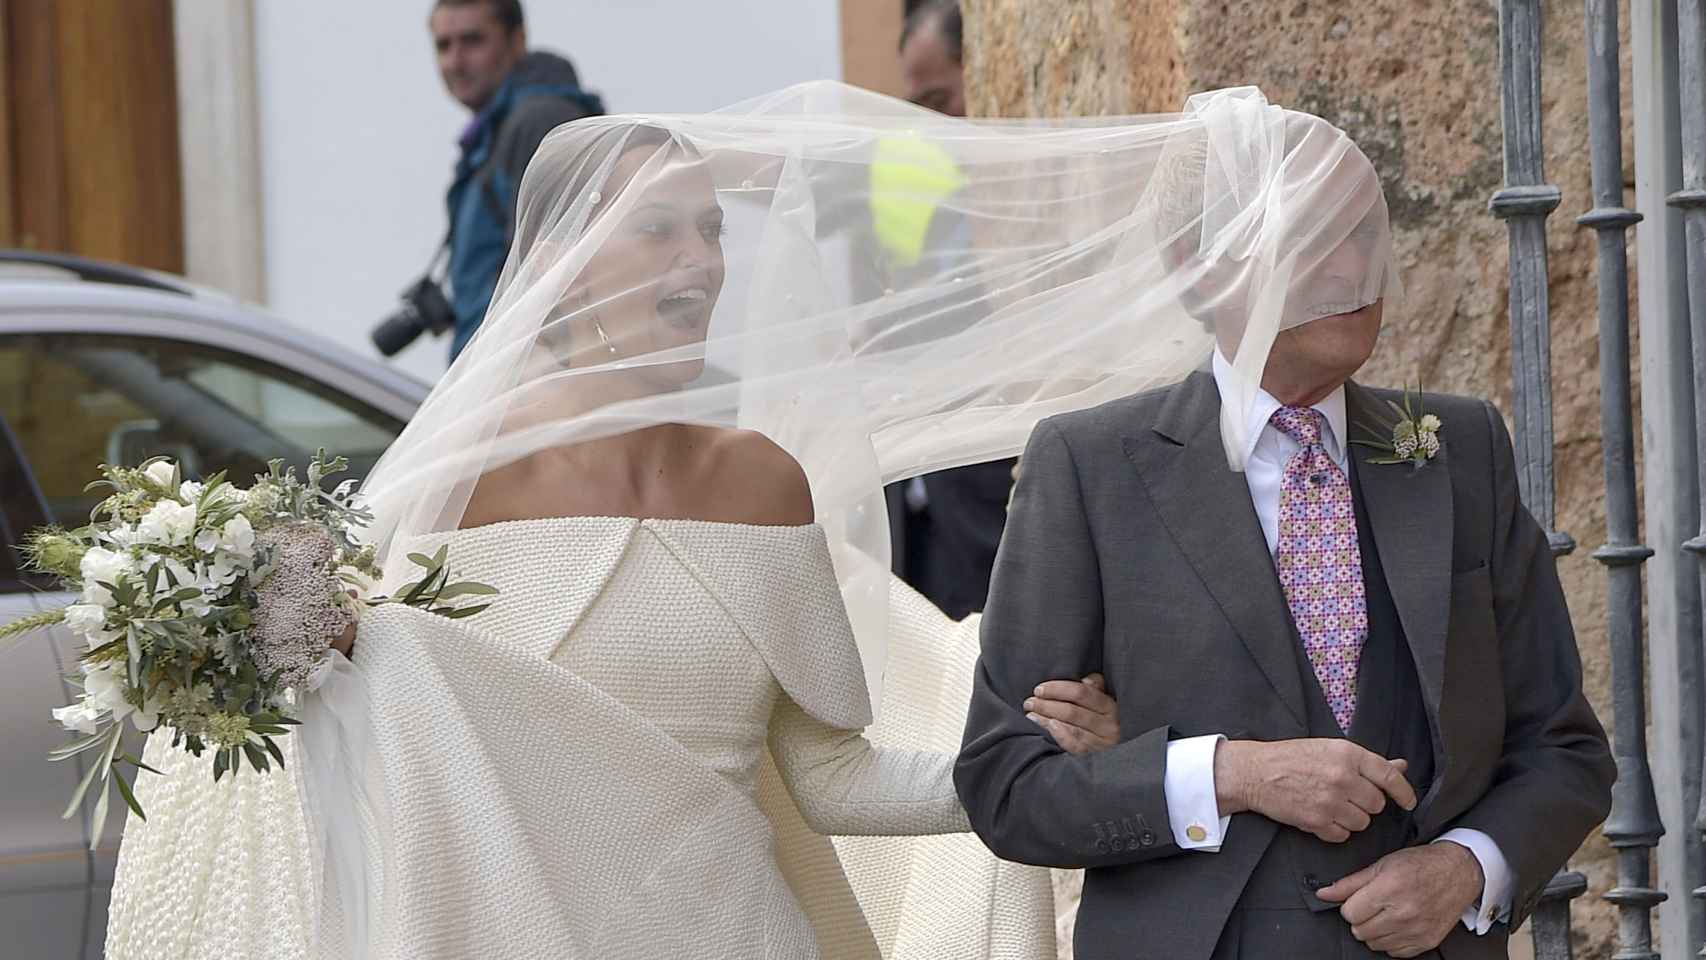 El viento provocaba esta divertida escena en la que el rostro del padre de la novia quedaba cubierto por el velo nupcial